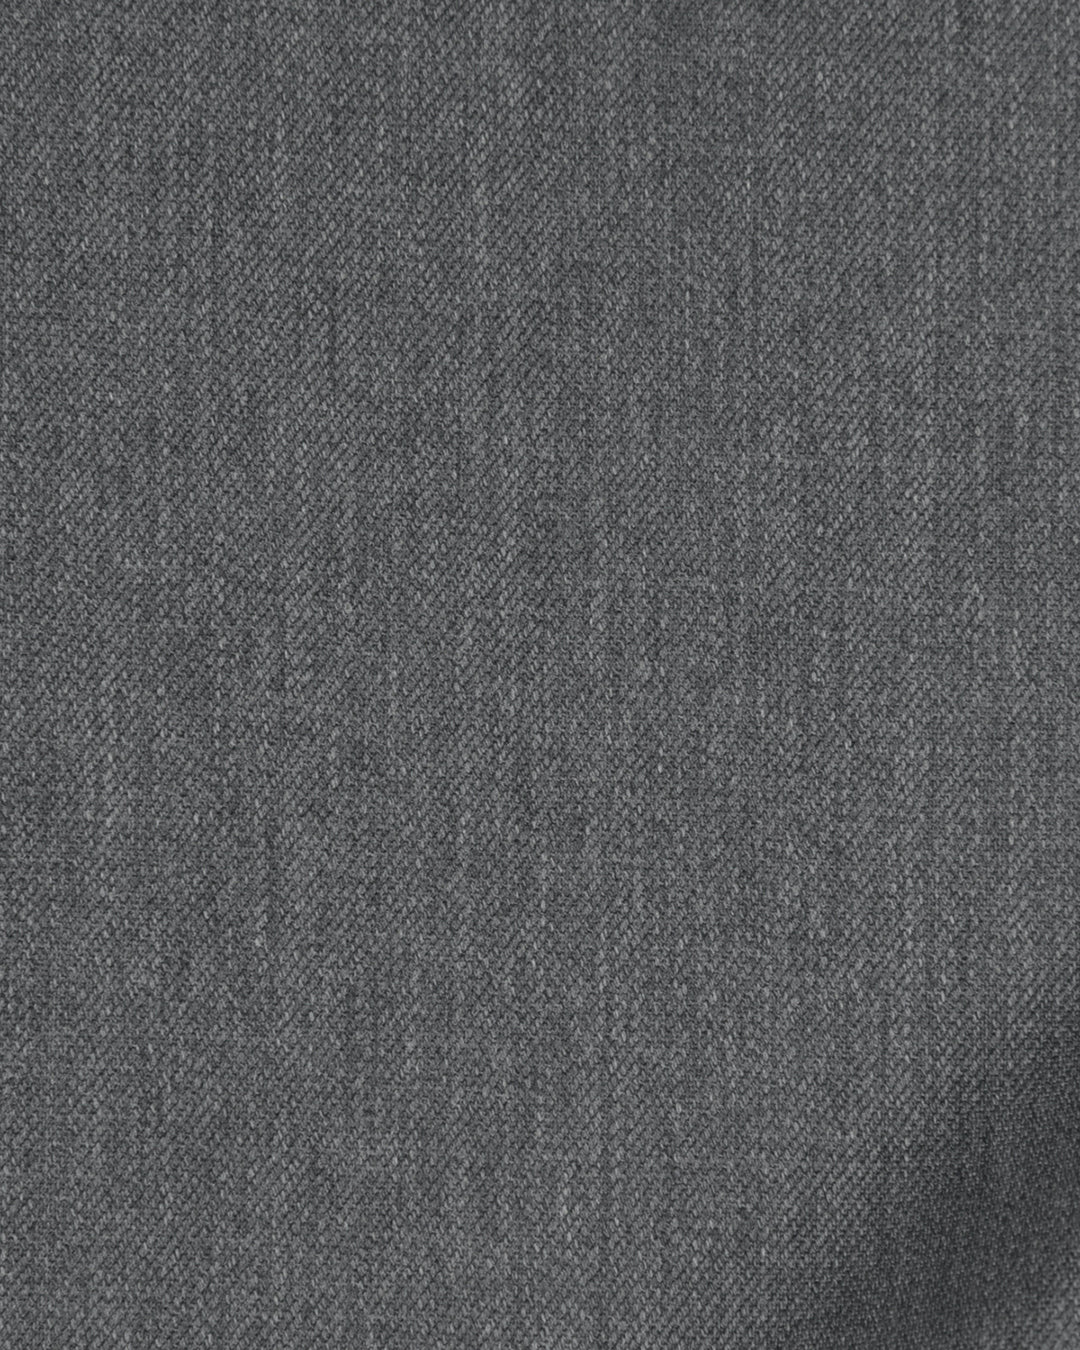 Cerruti: Nickel Grey Dress Wool